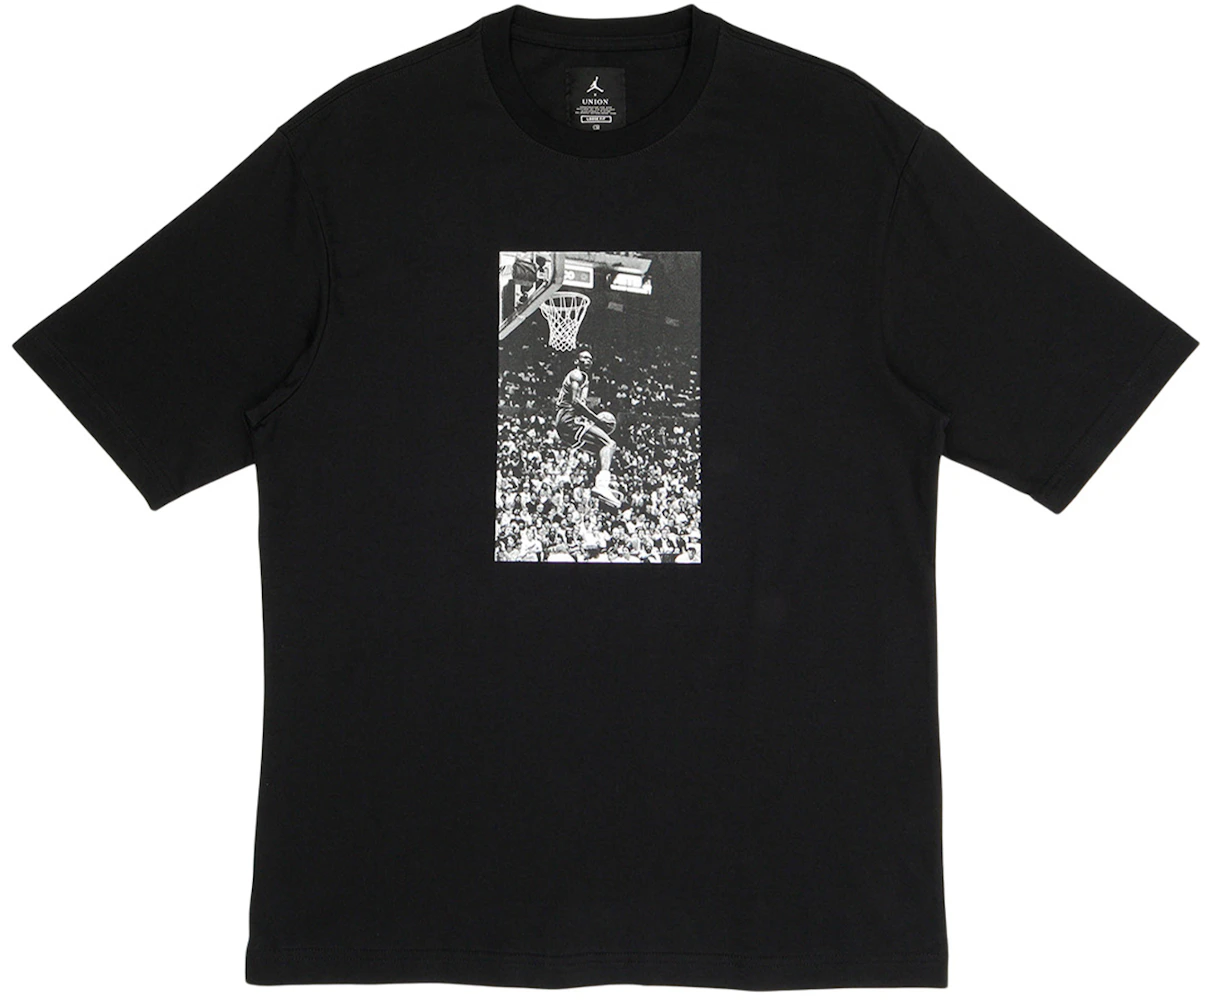 Jordan x Union Reverse Dunk T-Shirt Black